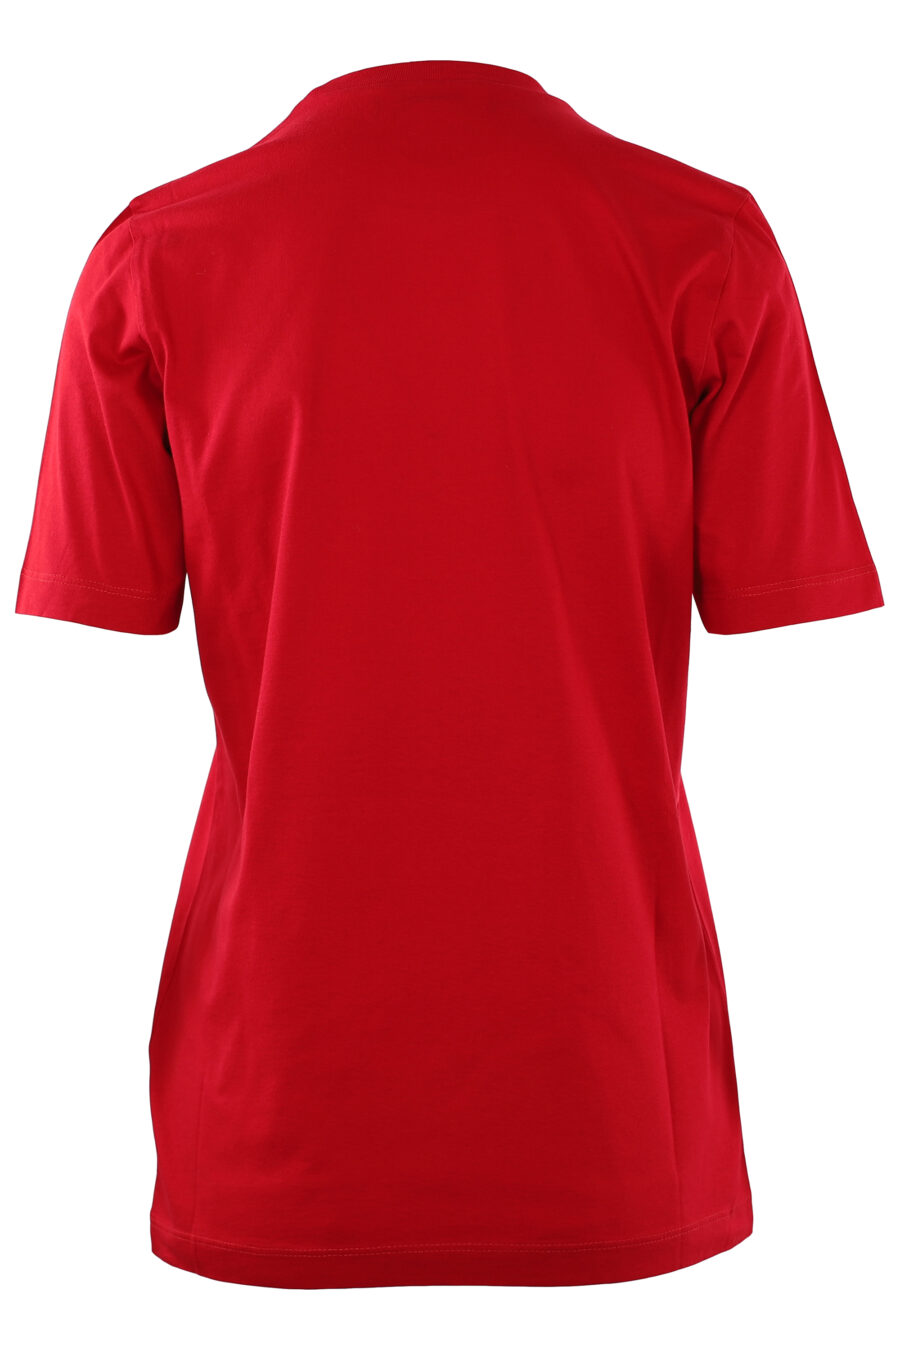 Camiseta roja oscura con logo "icon" blanco - IMG 0251